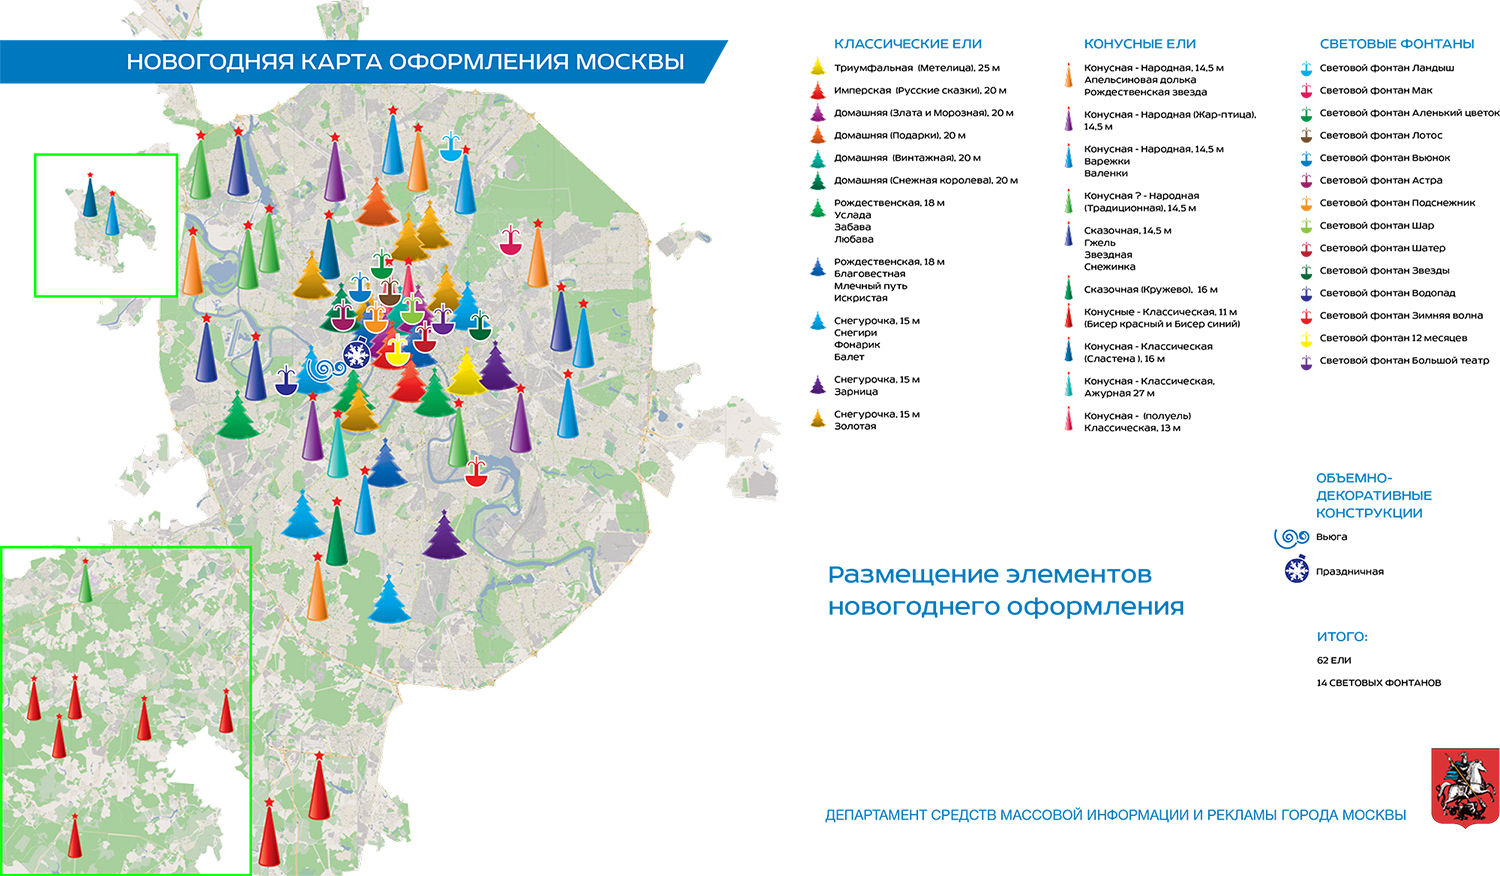 &laquo;Концепция оформления территорий города Москвы, представленная департаментом средств массовой информации и&nbsp;рекламы города Москвы&raquo;